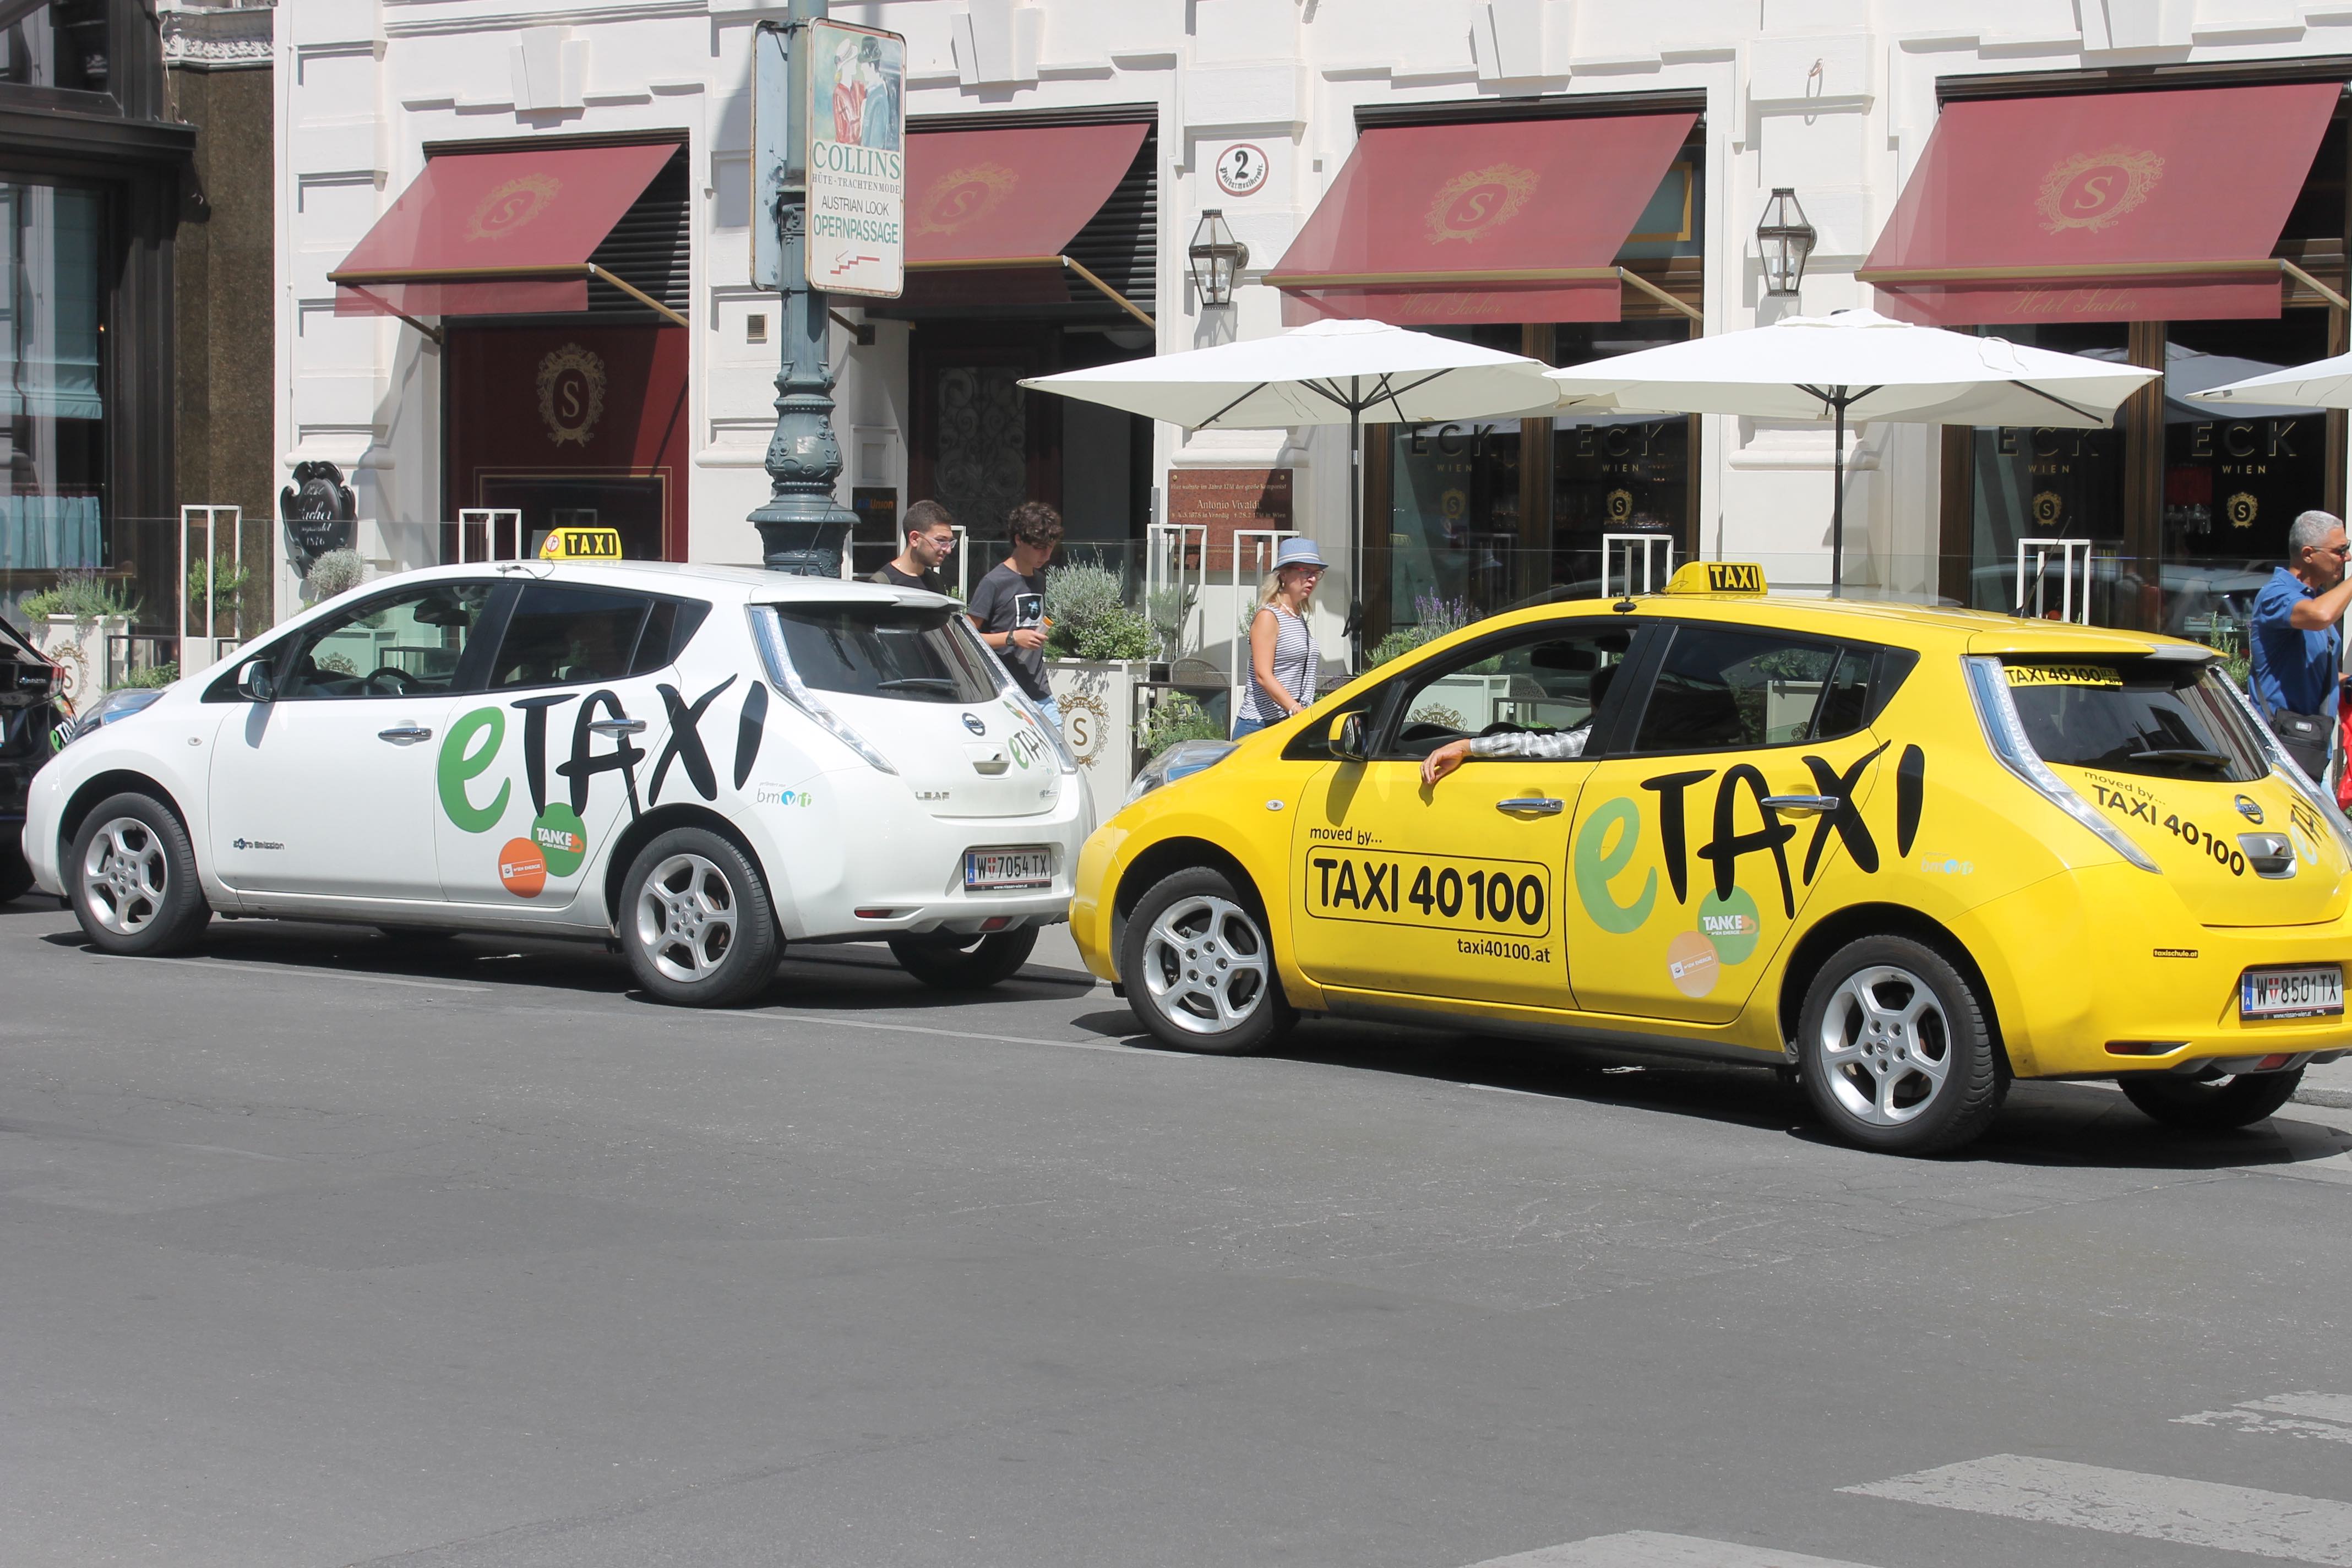 Blog: Mobiliteit yn Wenen giet folle fierder dan e-Taxi ...